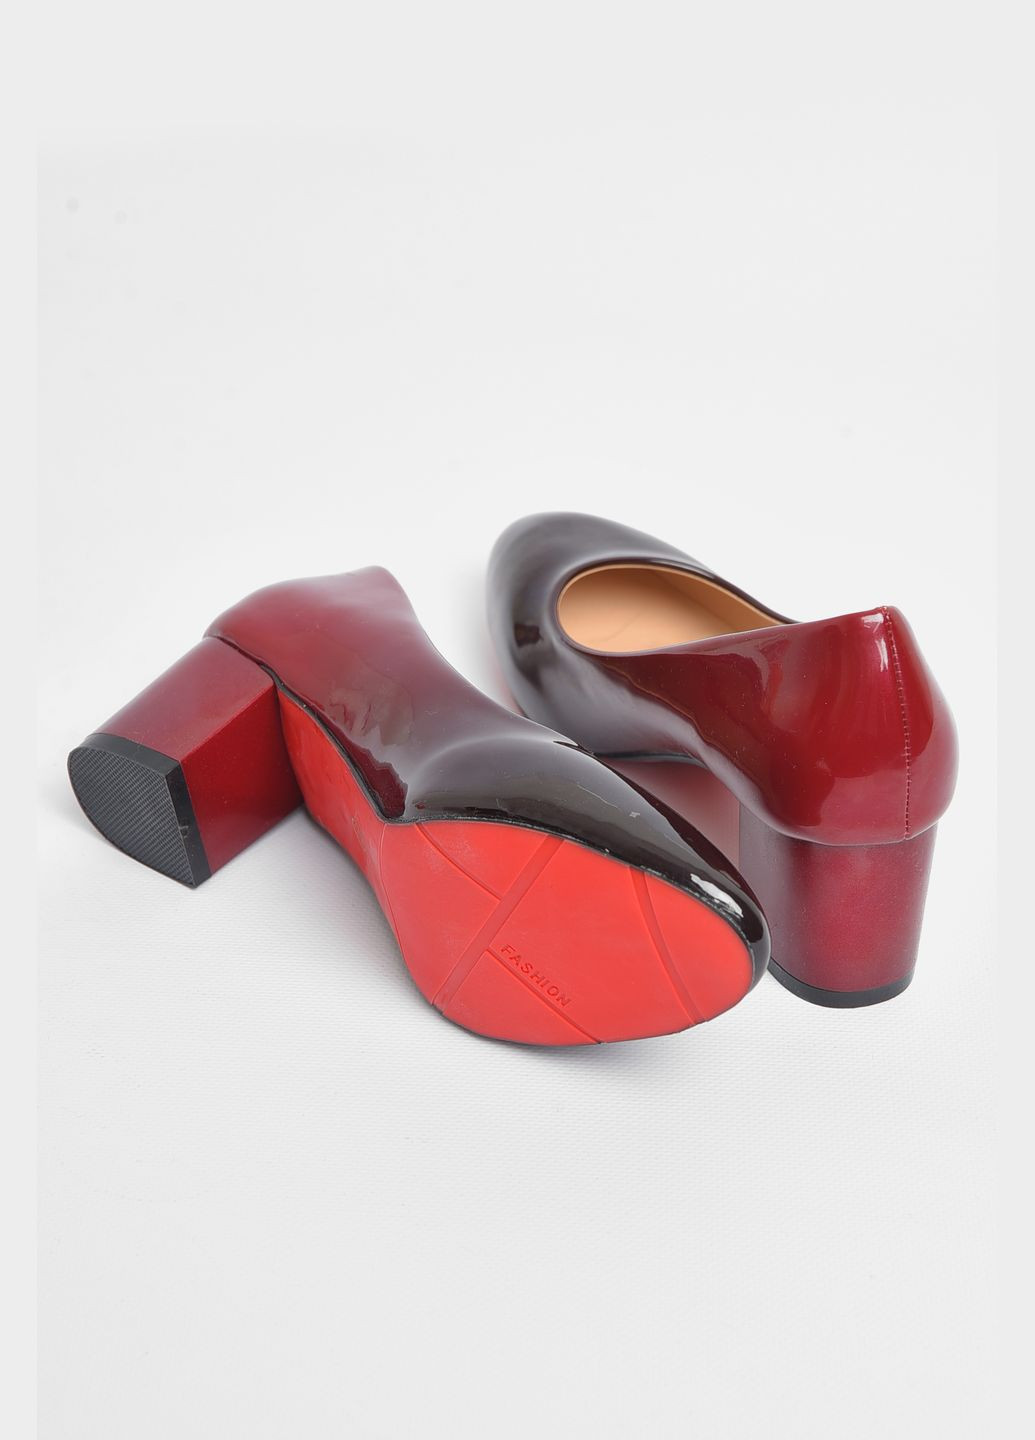 Туфли женские бордового цвета Let's Shop на среднем каблуке